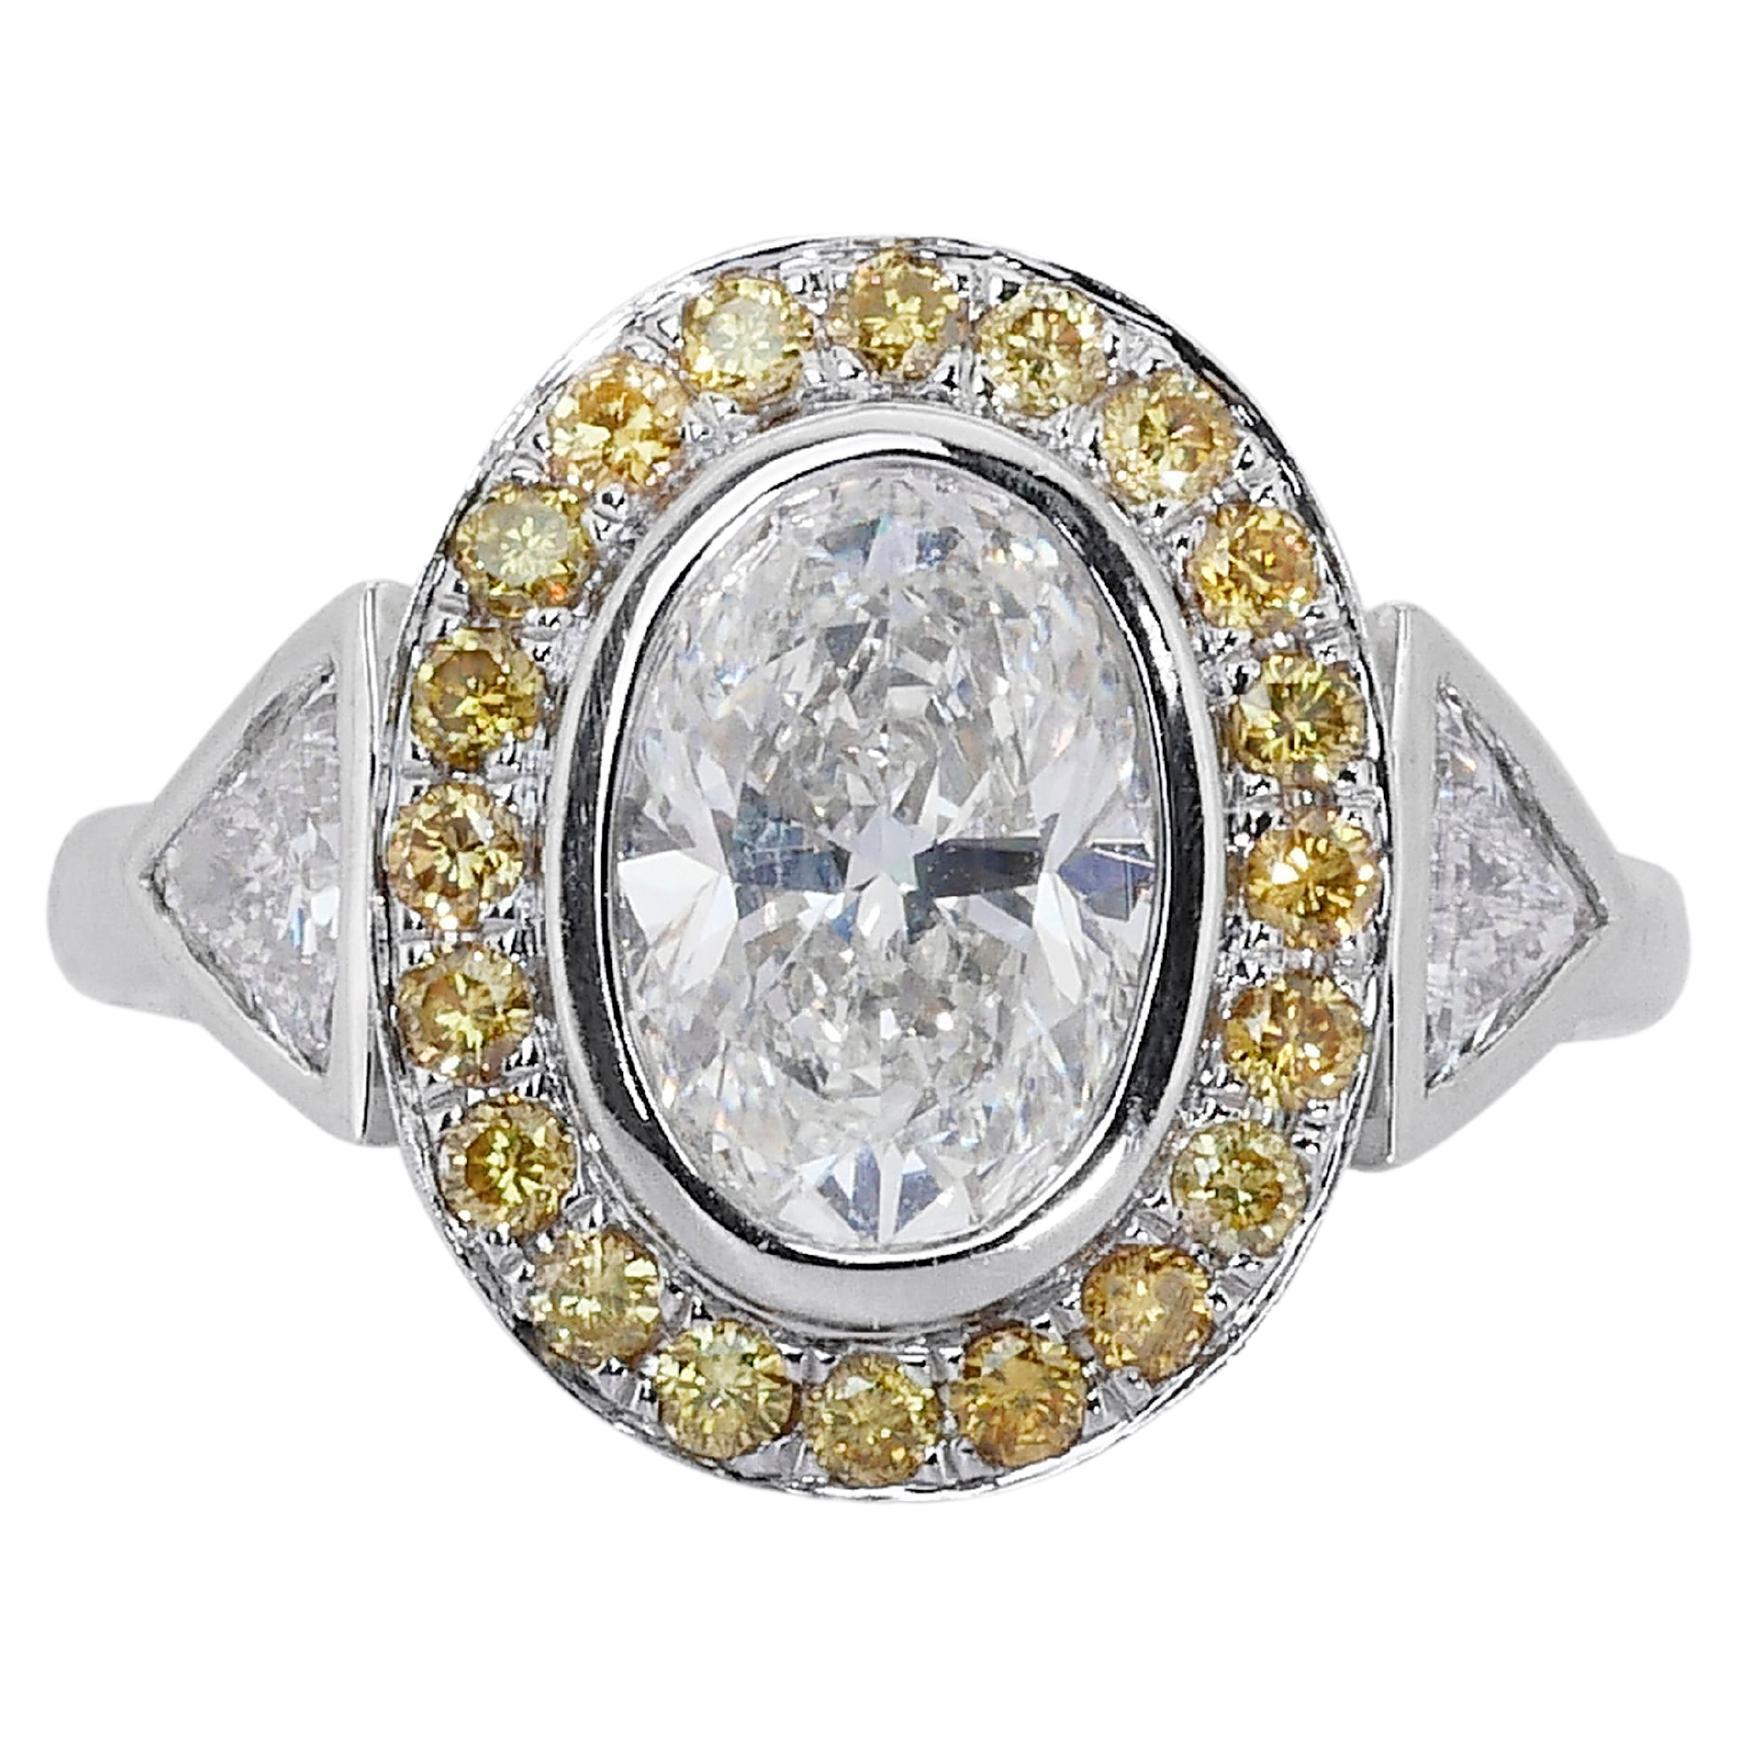 Ravissante bague ovale en or blanc 18 carats avec diamants naturels de 1,90 carat certifiés IGI